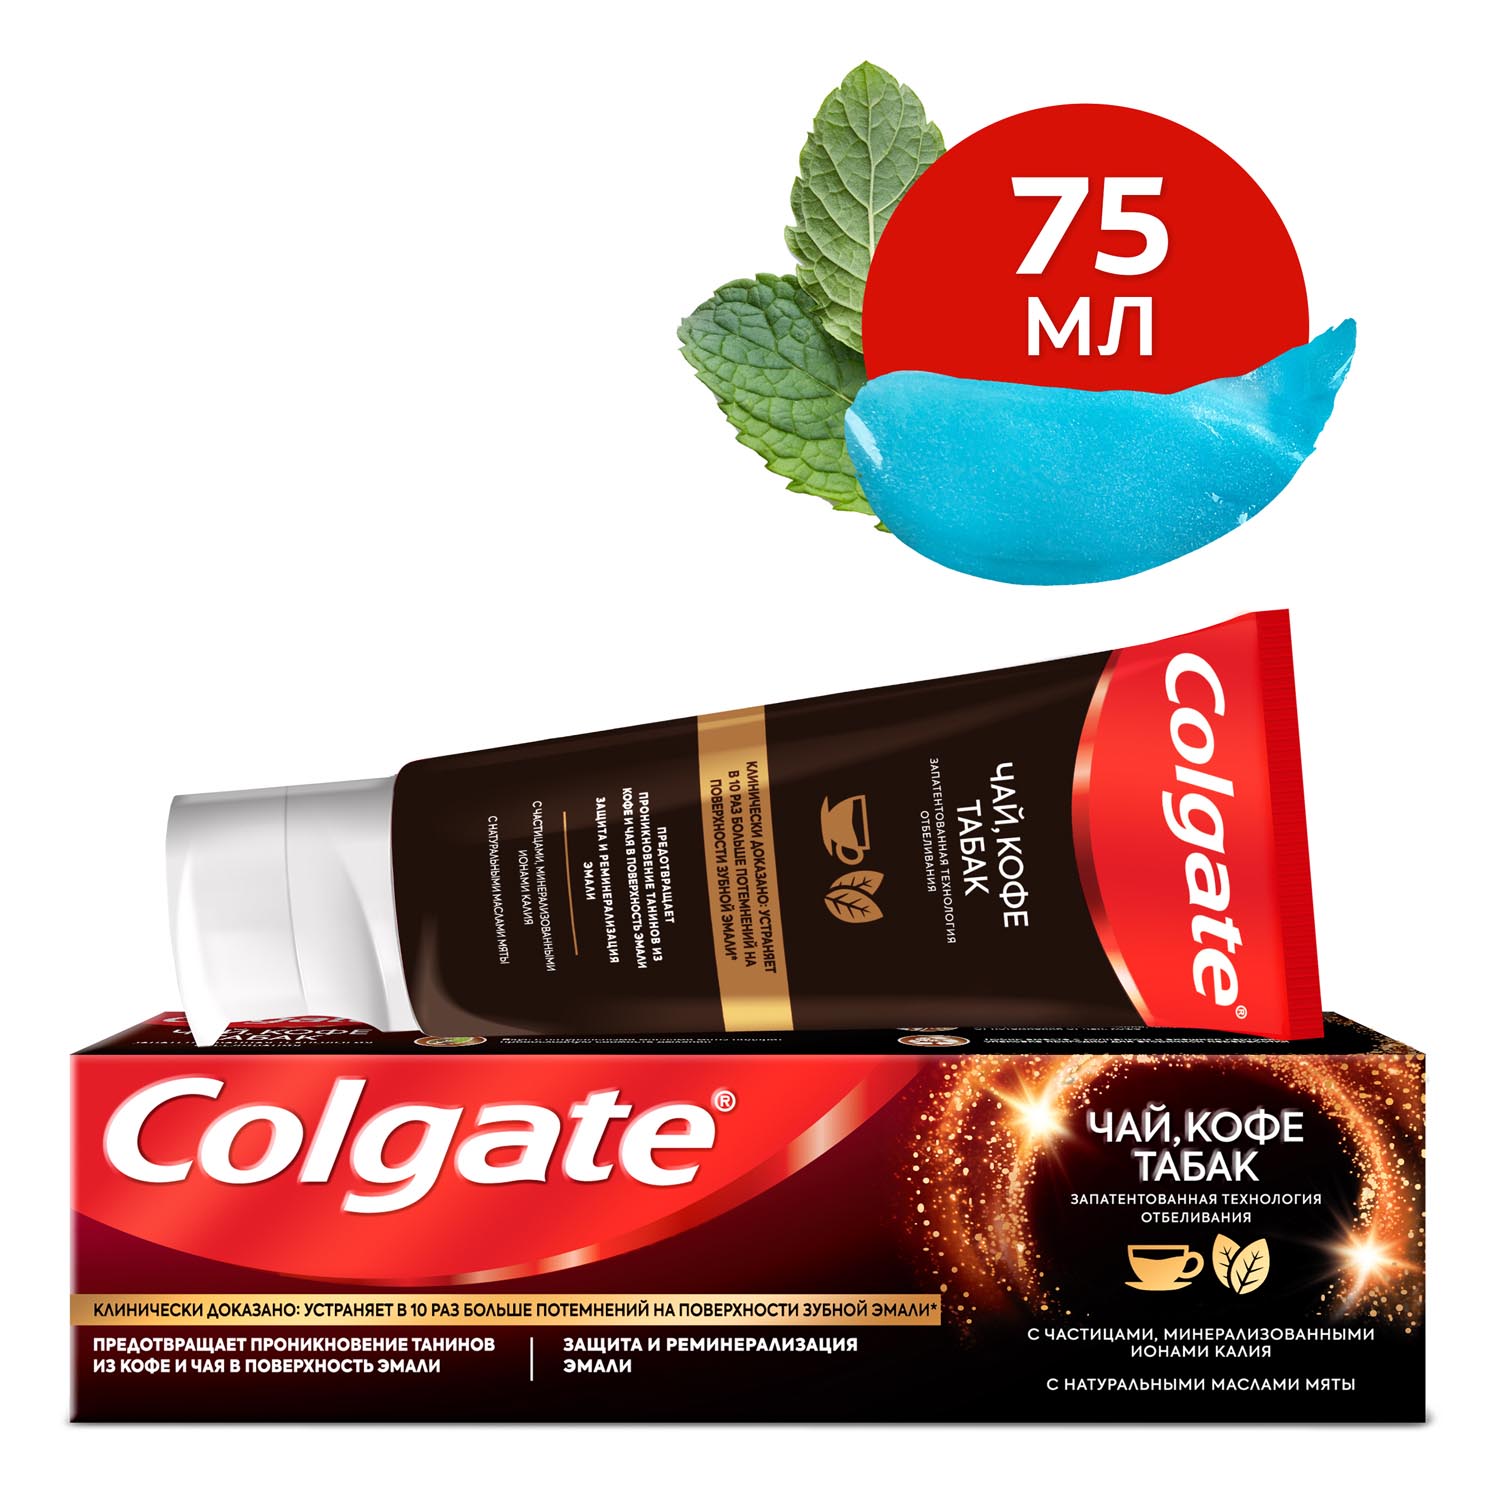 Зубная паста Colgate чай, кофе, табак отбеливающая с натуральными маслами мяты, 75 мл